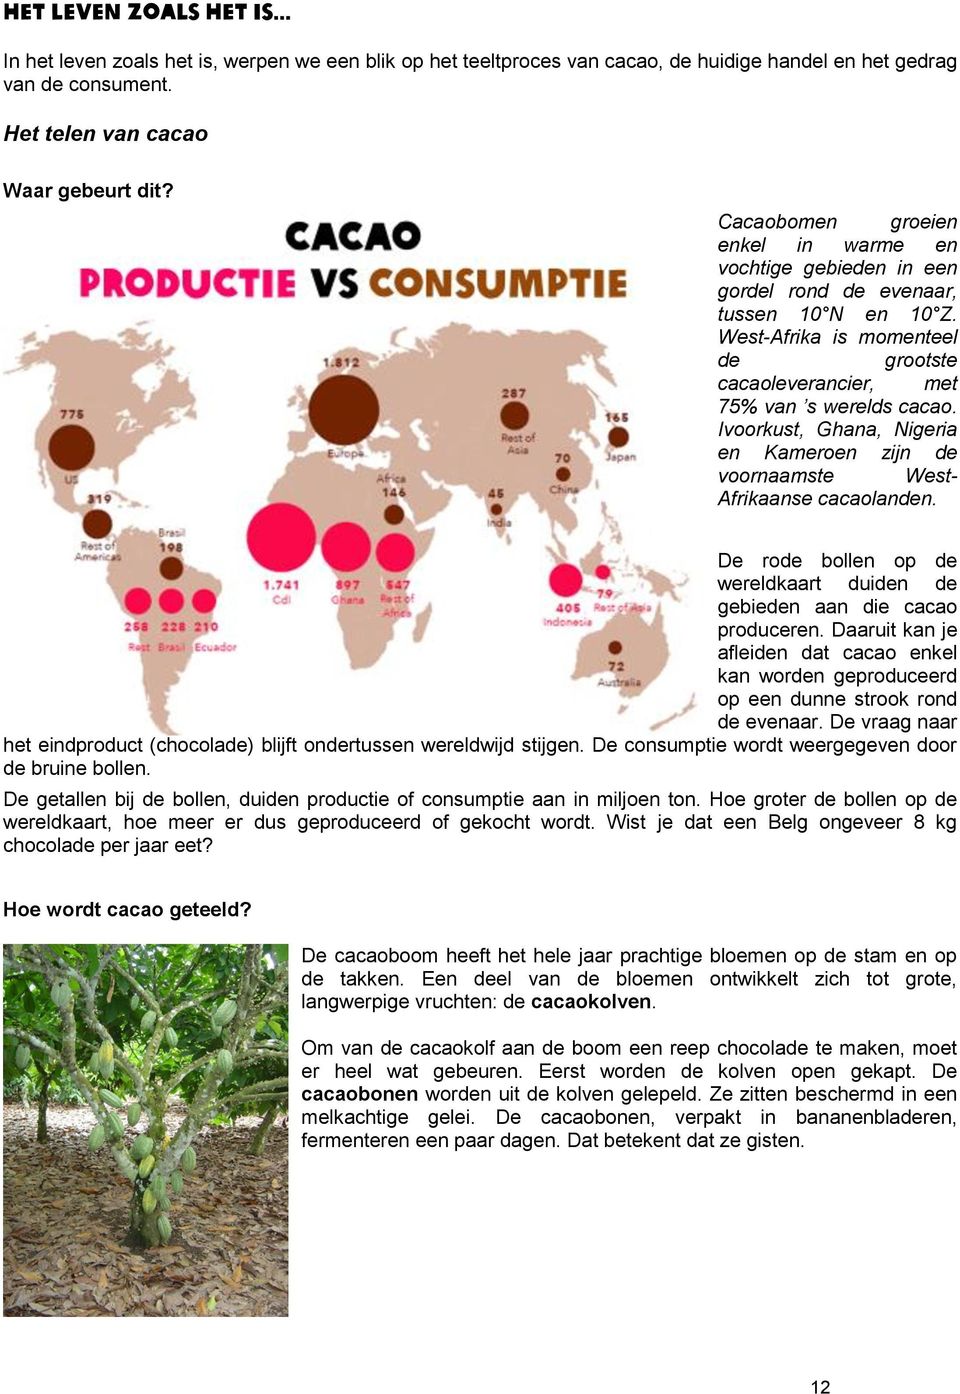 Ivoorkust, Ghana, Nigeria en Kameroen zijn de voornaamste West- Afrikaanse cacaolanden. De rode bollen op de wereldkaart duiden de gebieden aan die cacao produceren.